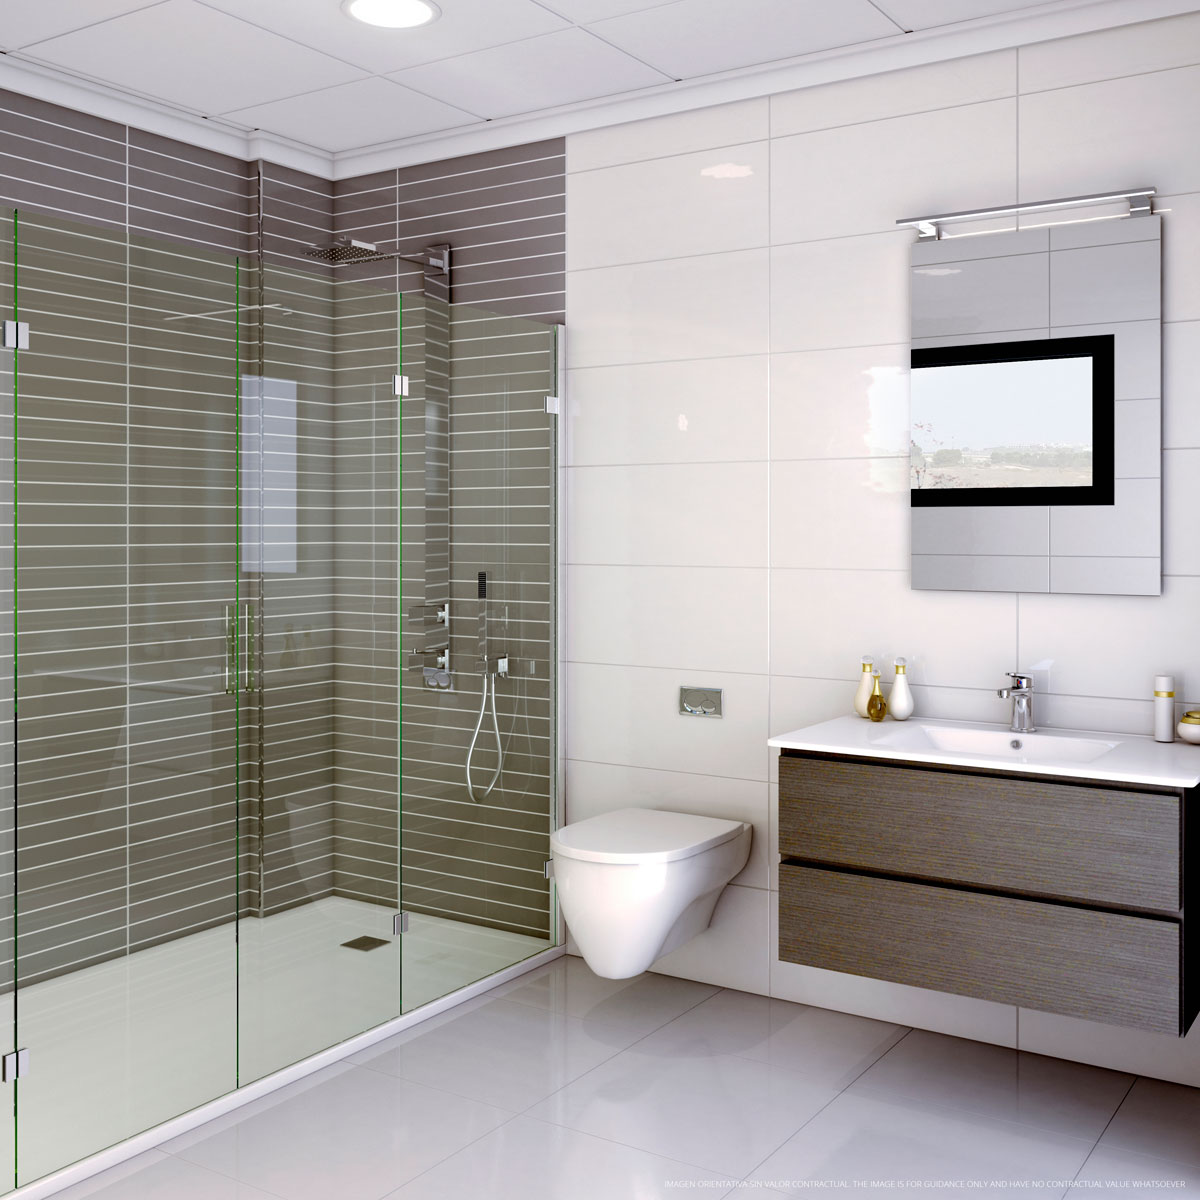 Render interior de un baño realizado con infografía 3D para la visualización de una vivienda